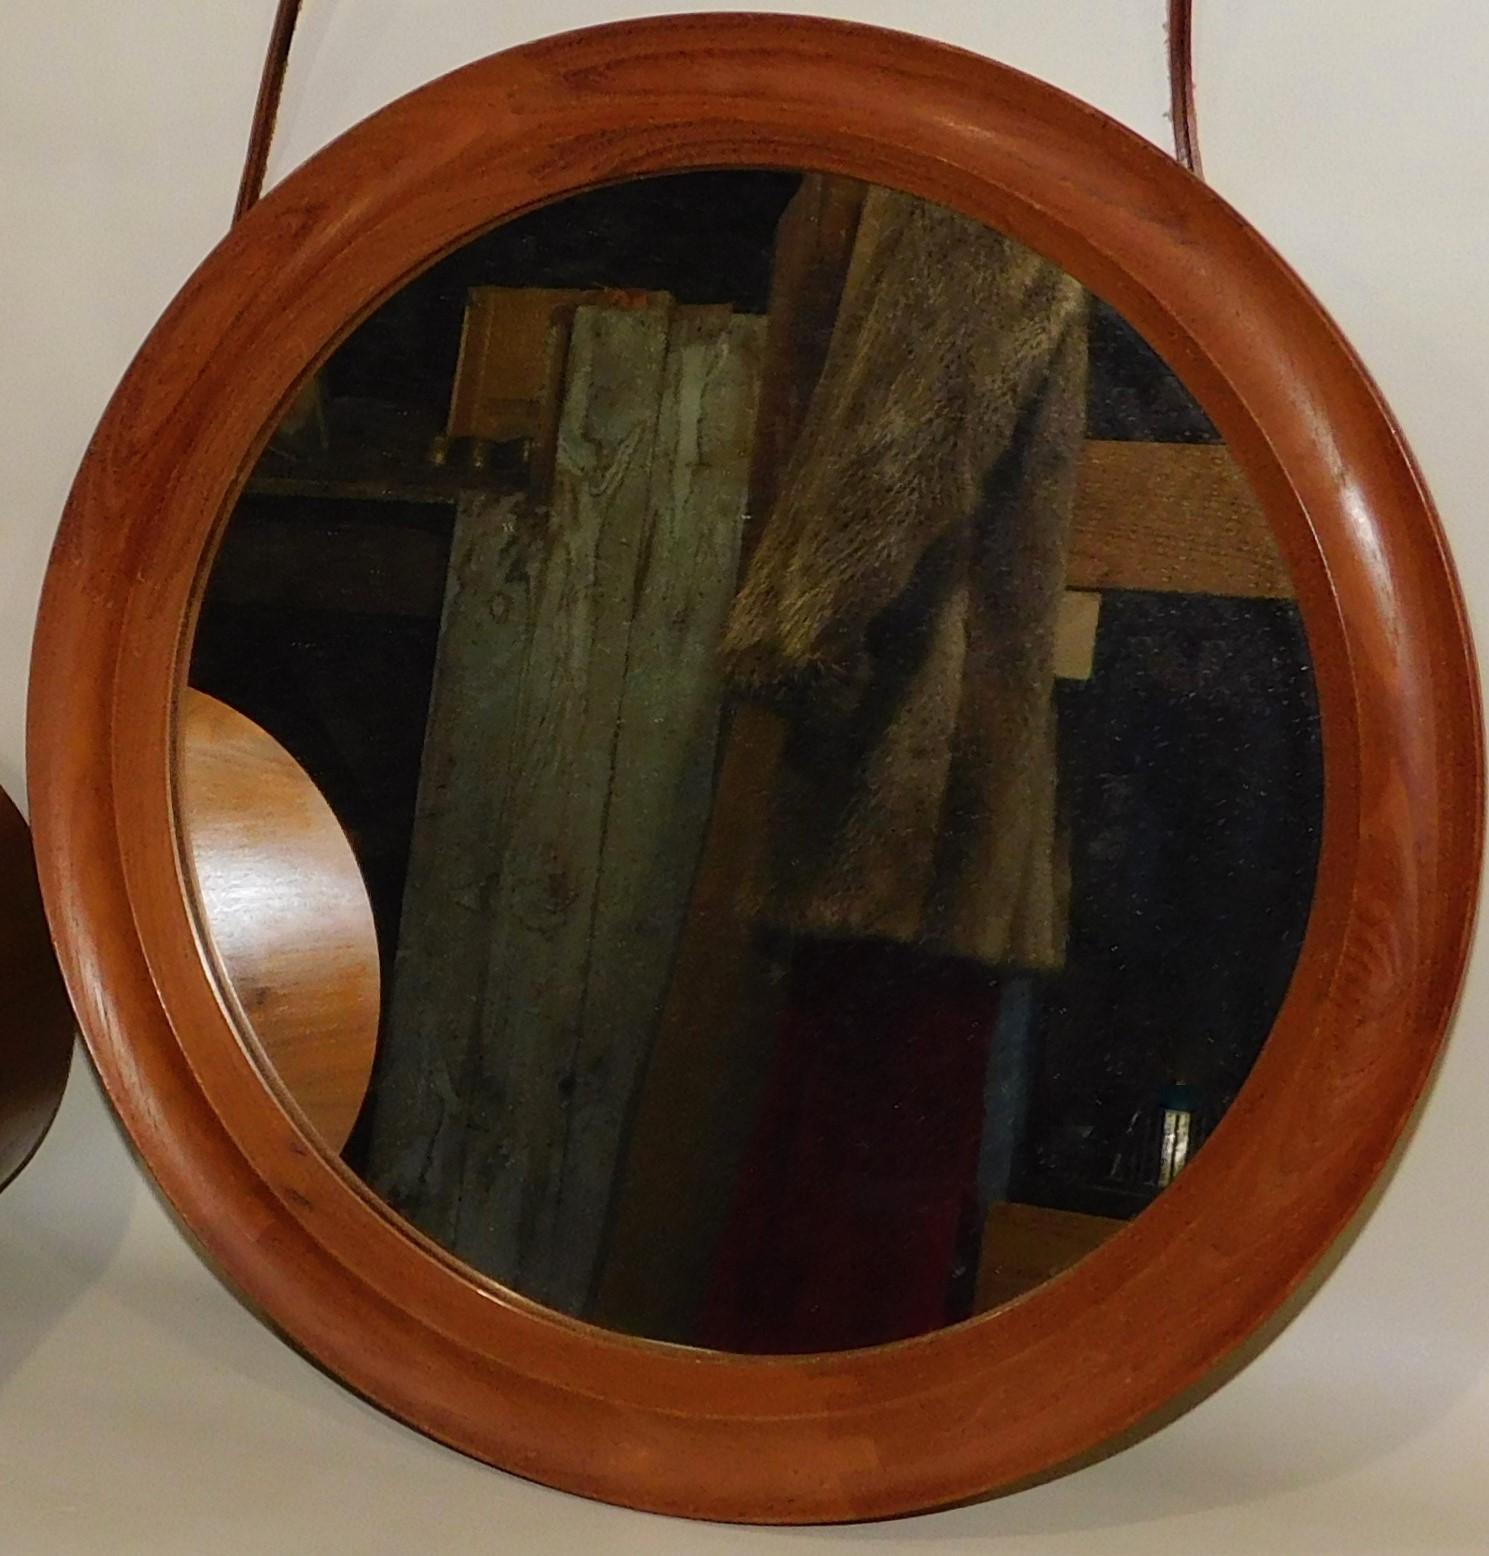 20th Century Pedersen & Hansen Danish Teak Oval Mirror with Leather Hanger Strap